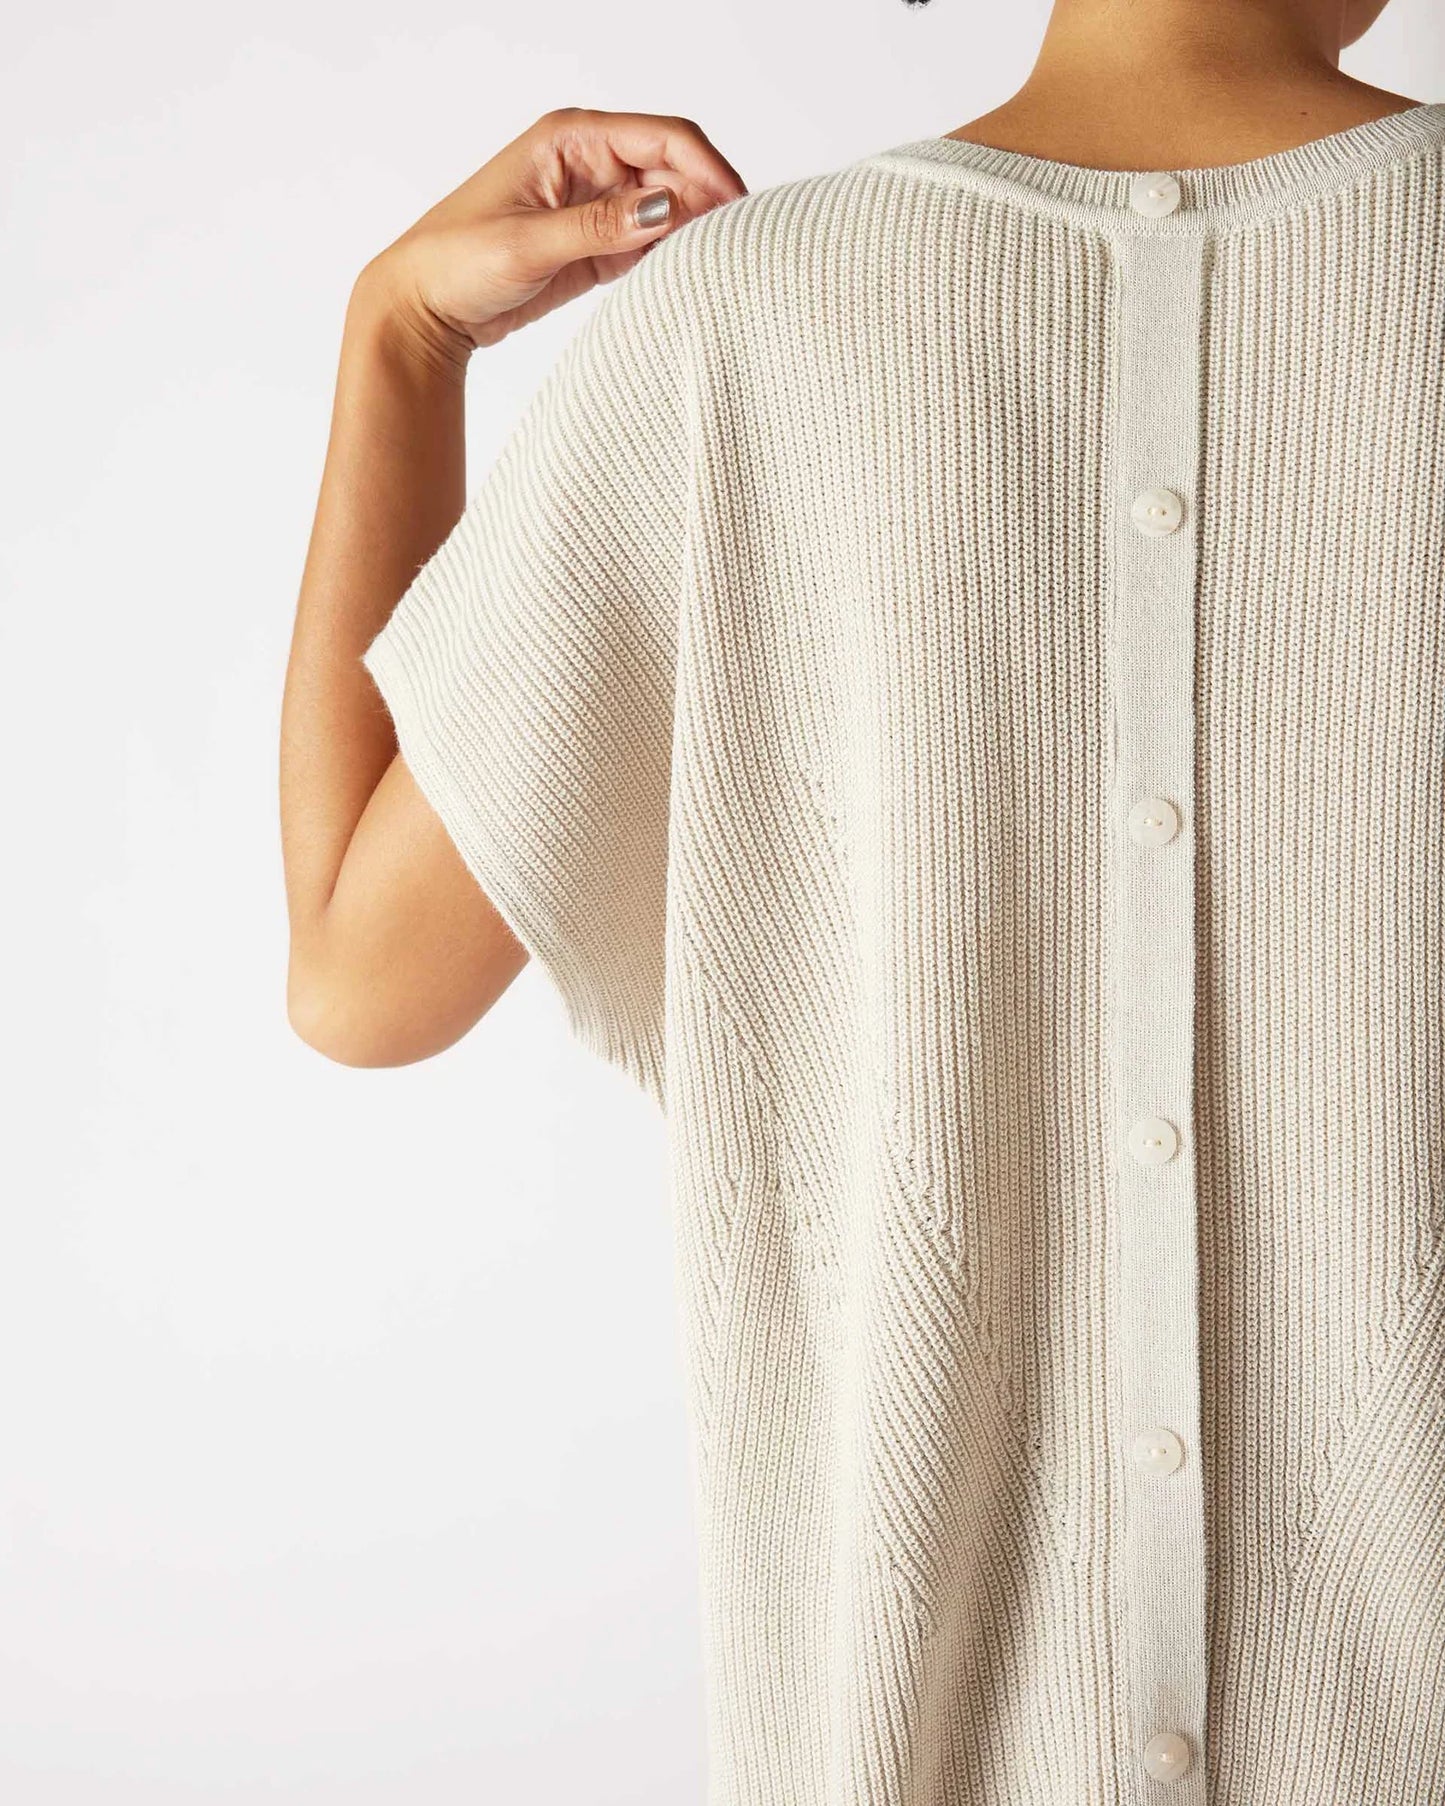 Camden Short Sleeve Sweater